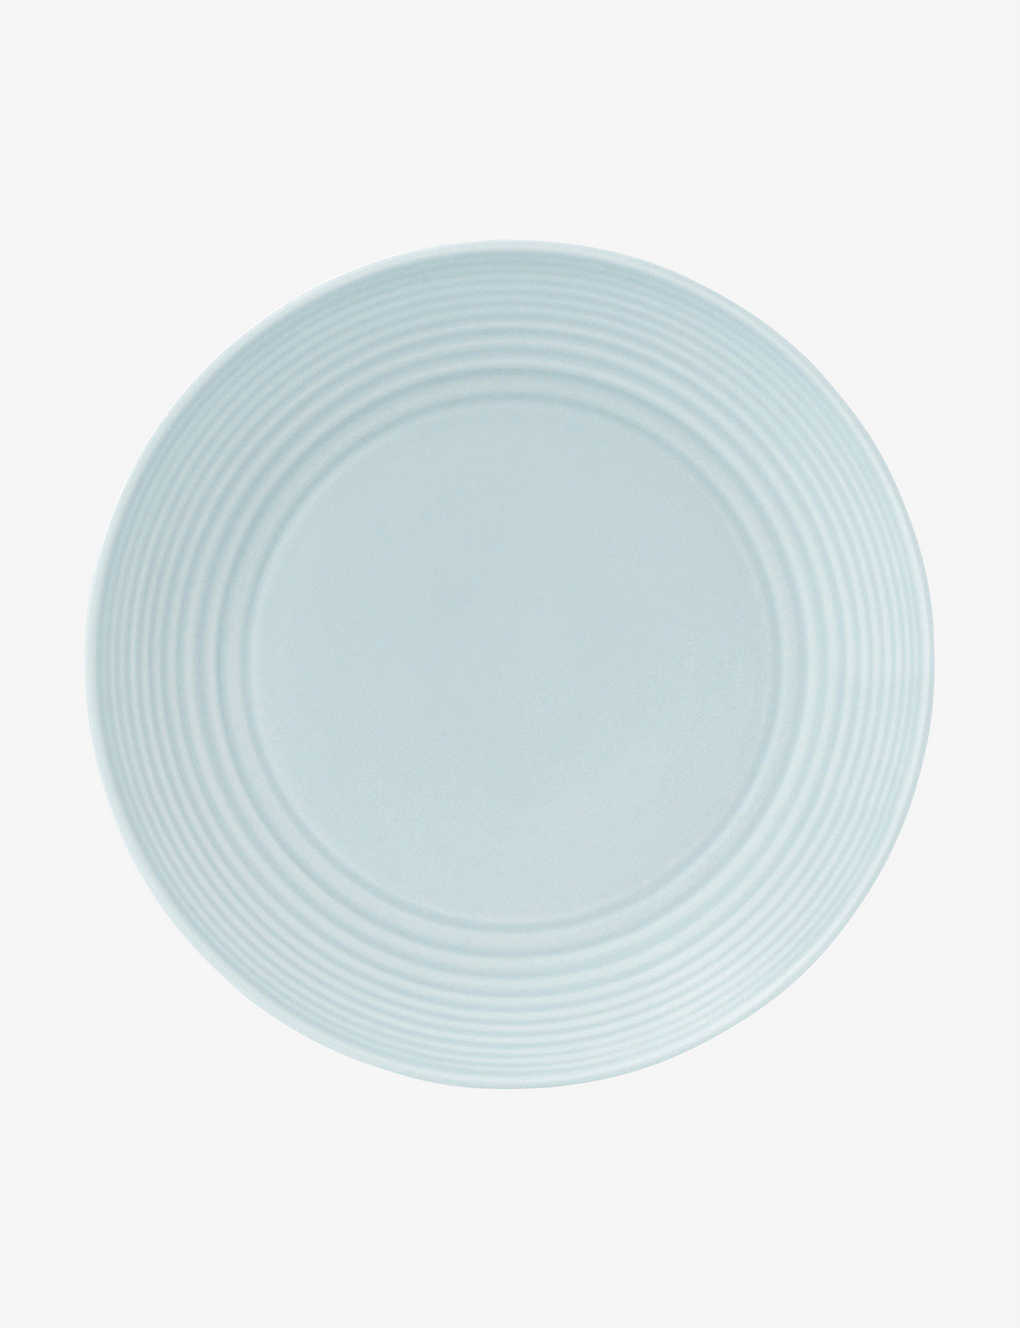 Royal Doulton Gordon Ramsay Maze Porcelain Plate 22cm